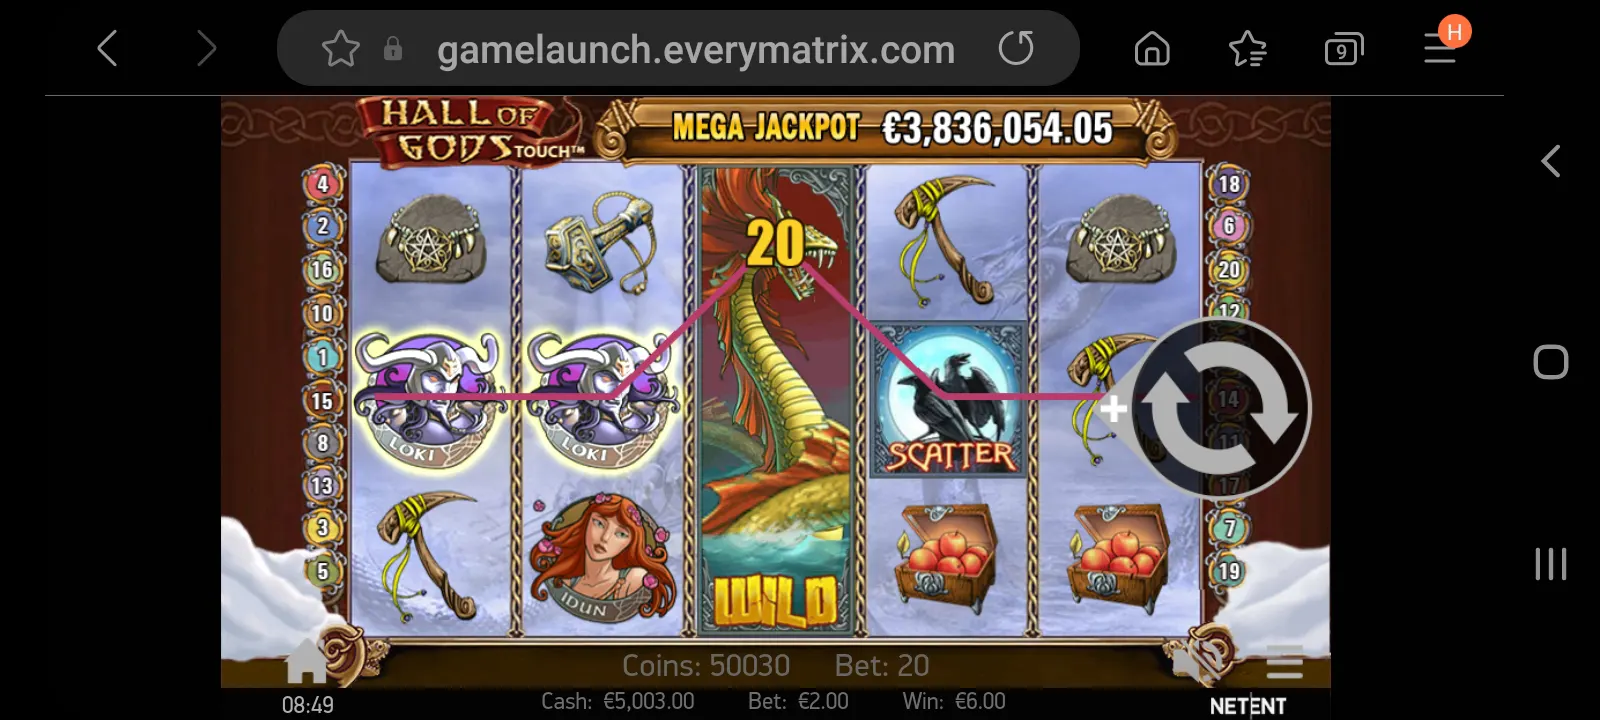 Genesis casino app screenshot 6